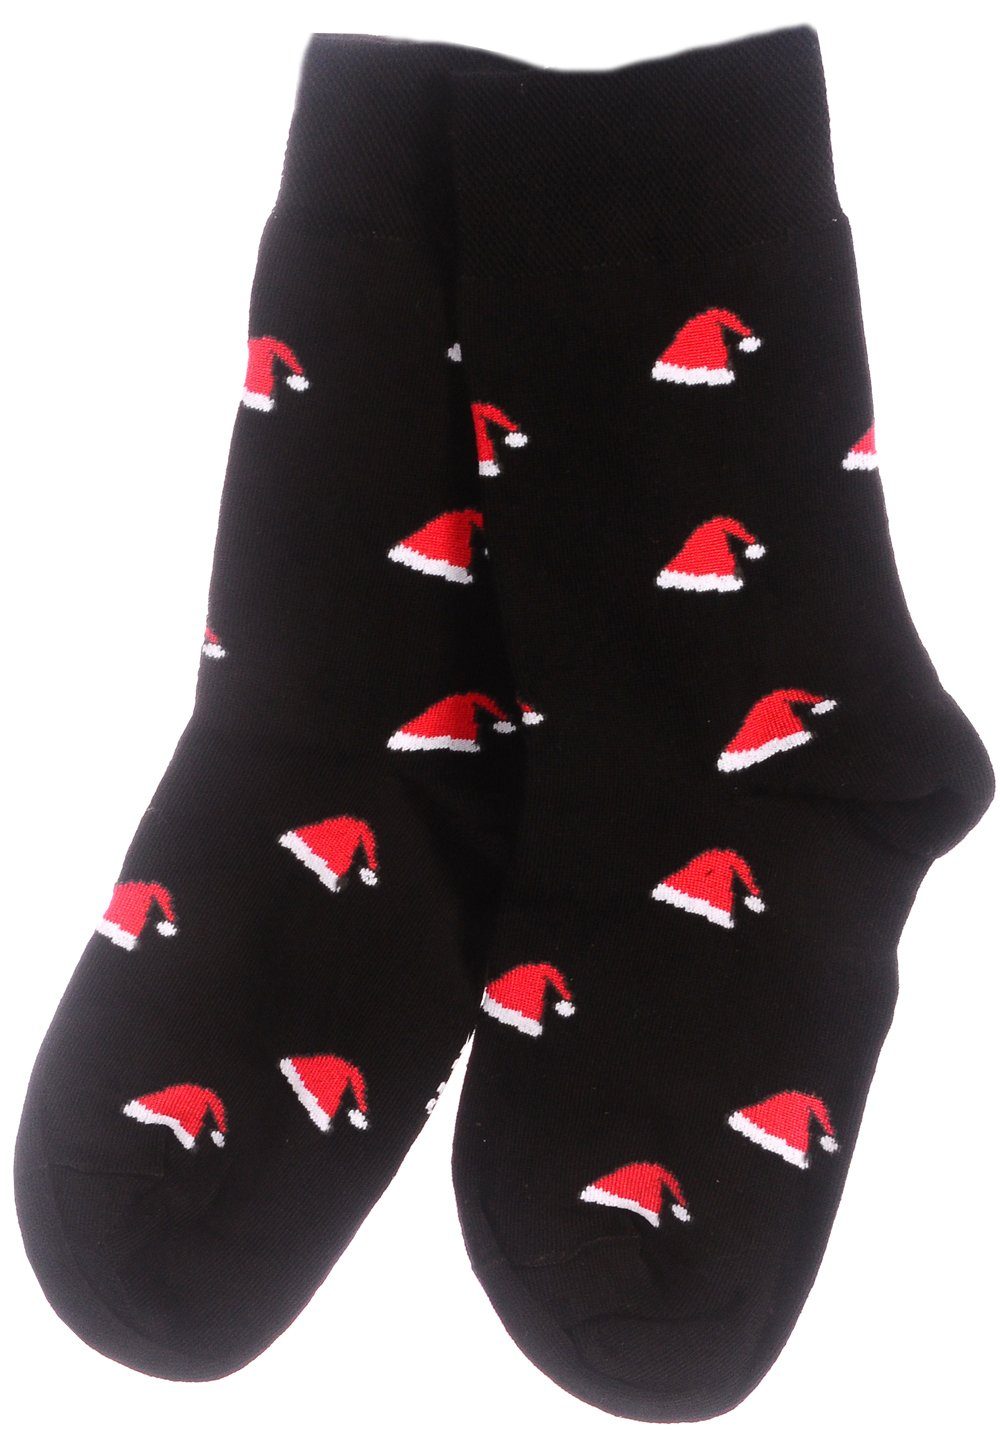 Martinex Socken Lustige bunte witzige 43 35 39 Weihnachtssocken Strümpfe 38 46 42